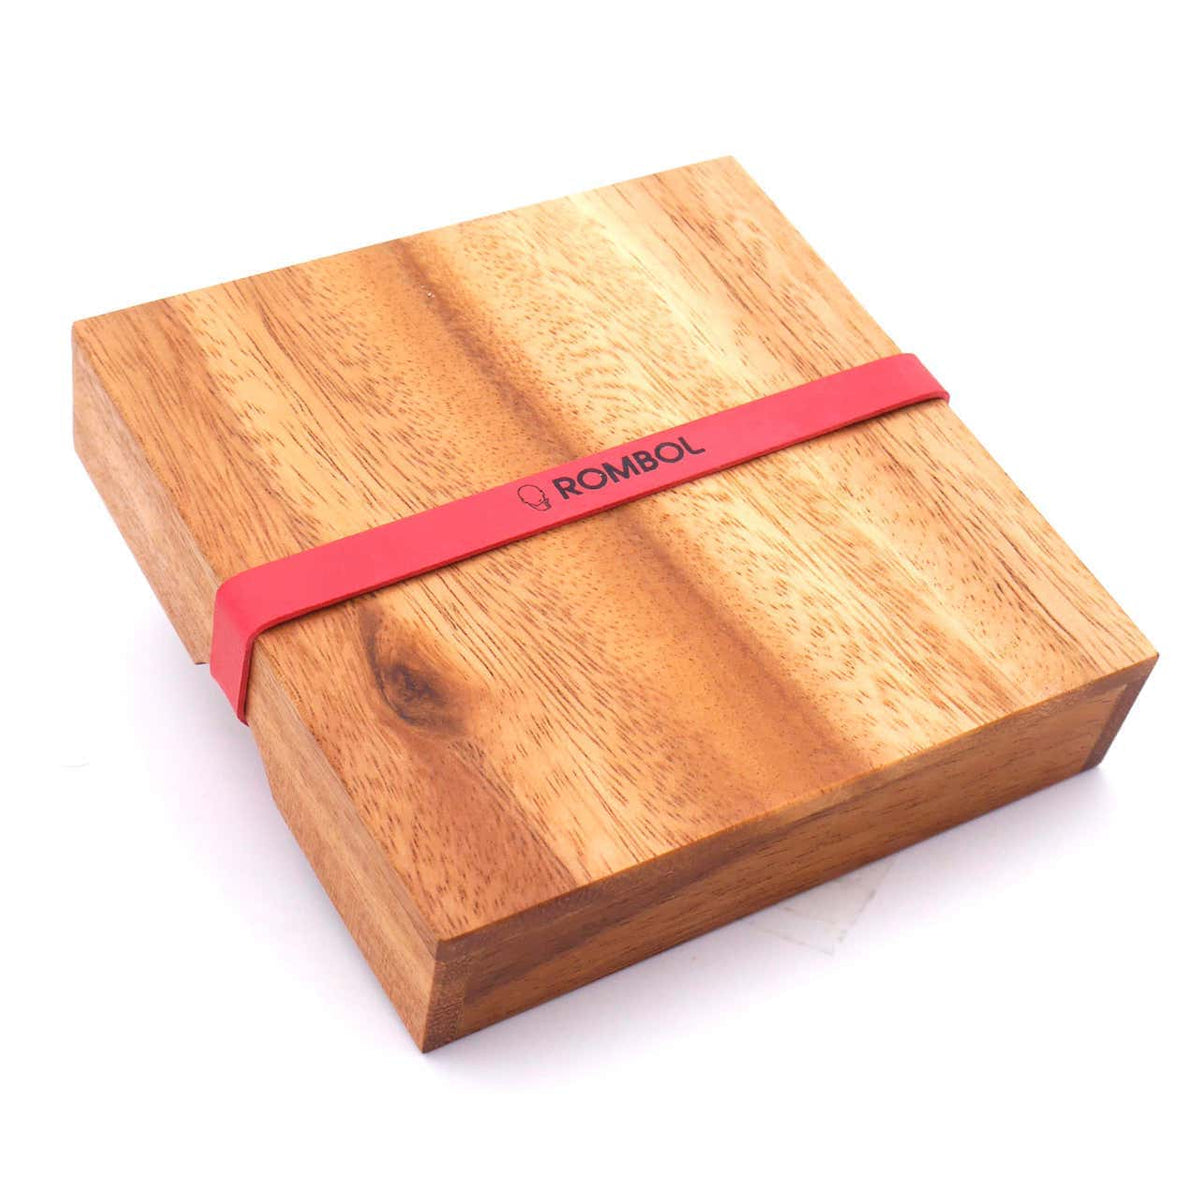 Holzbox mit Deckel und einem roten Verschlussband für den Transport oder Reisen.